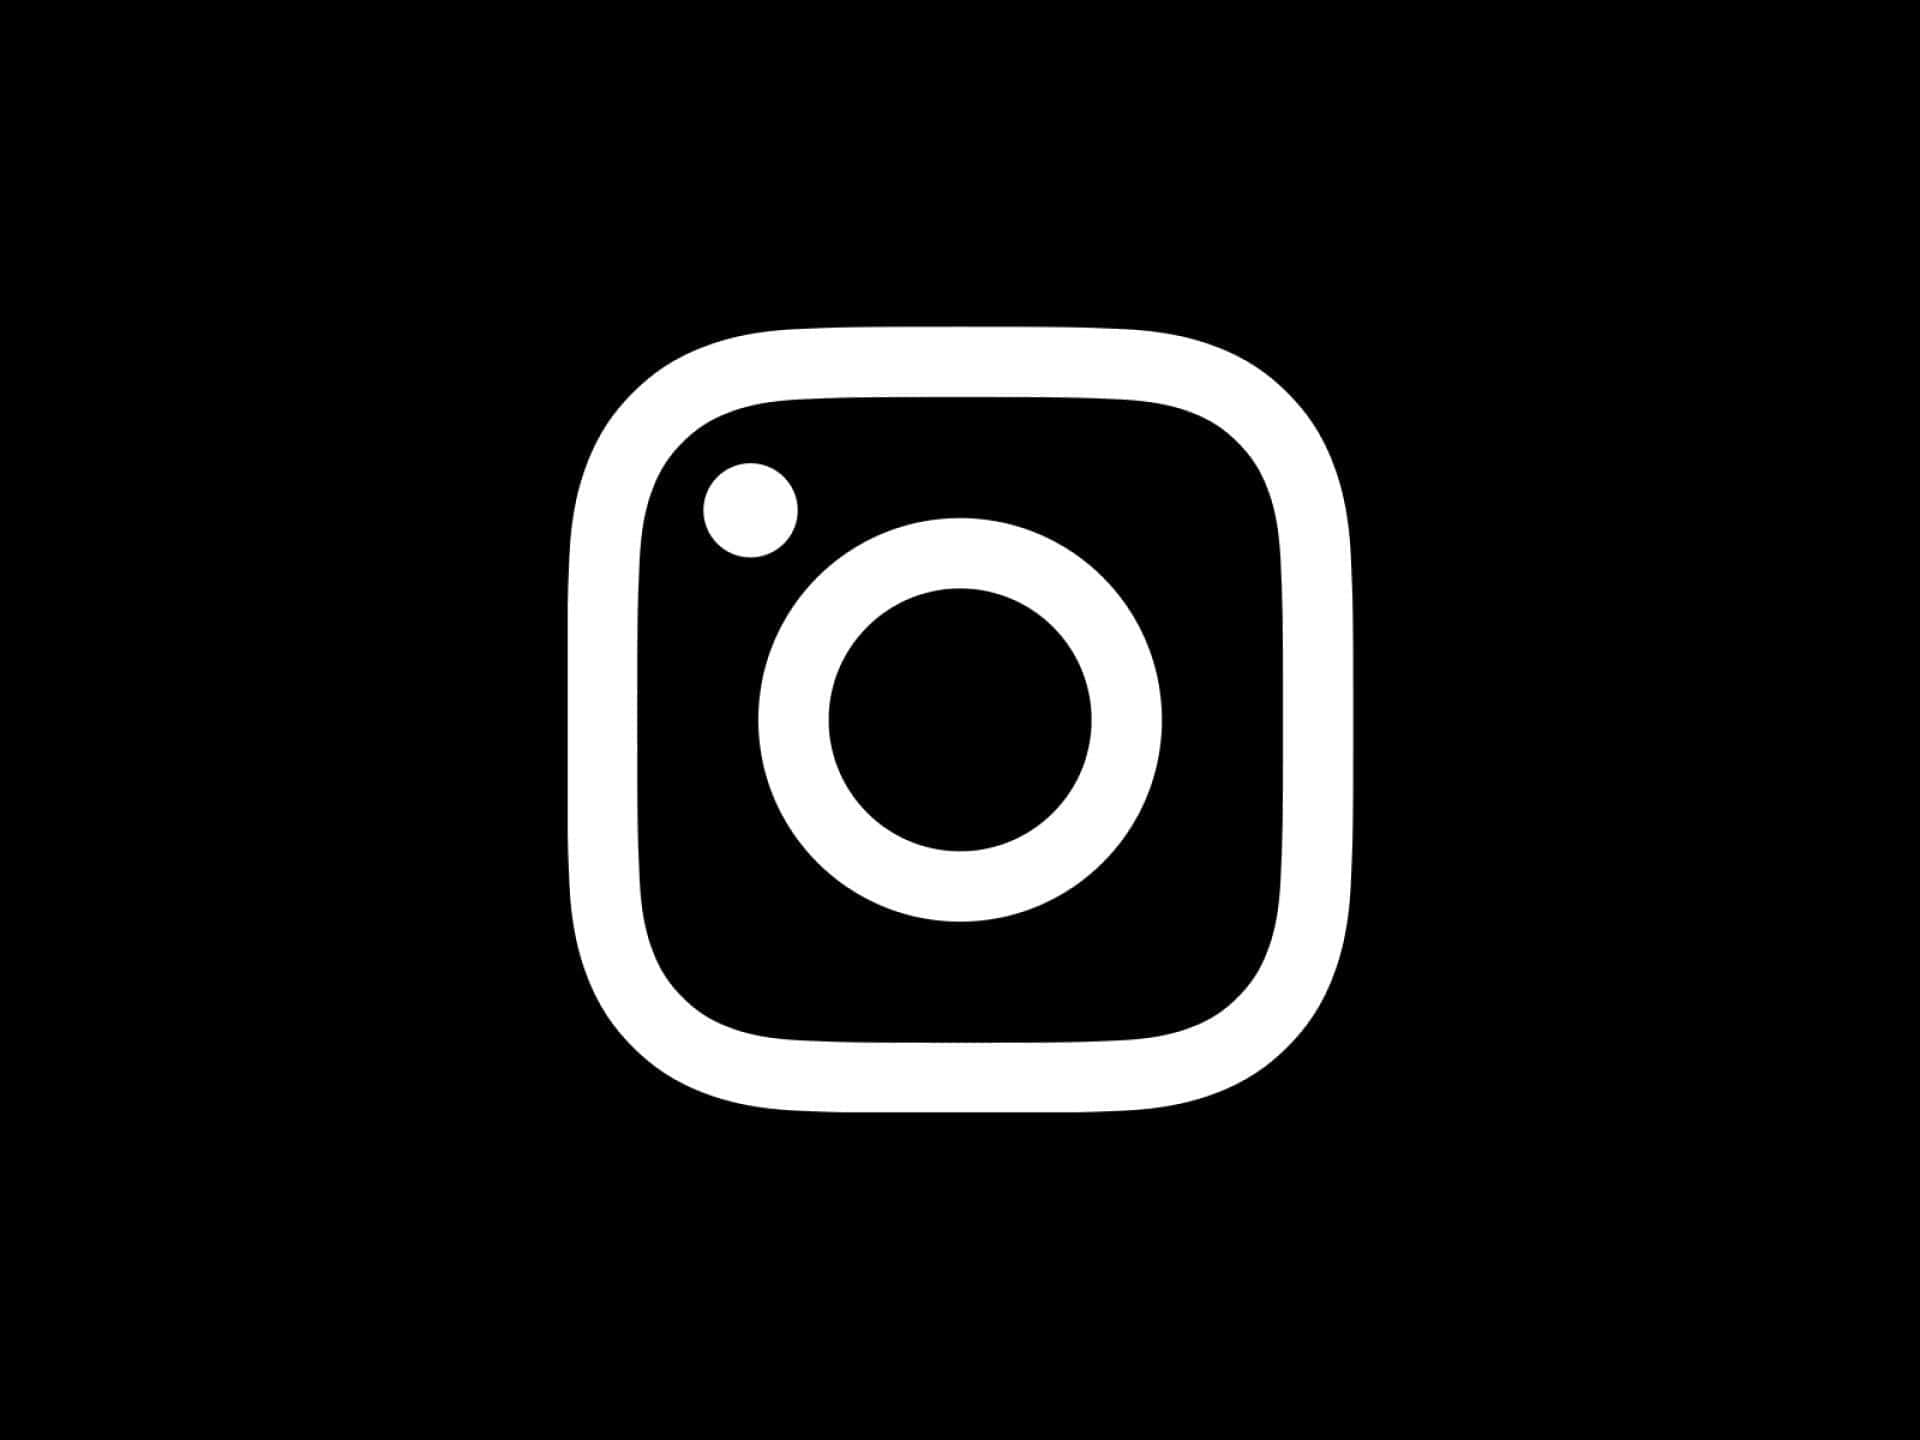 Logoblanco De Instagram Con Contorno Negro En Fondo Negro.